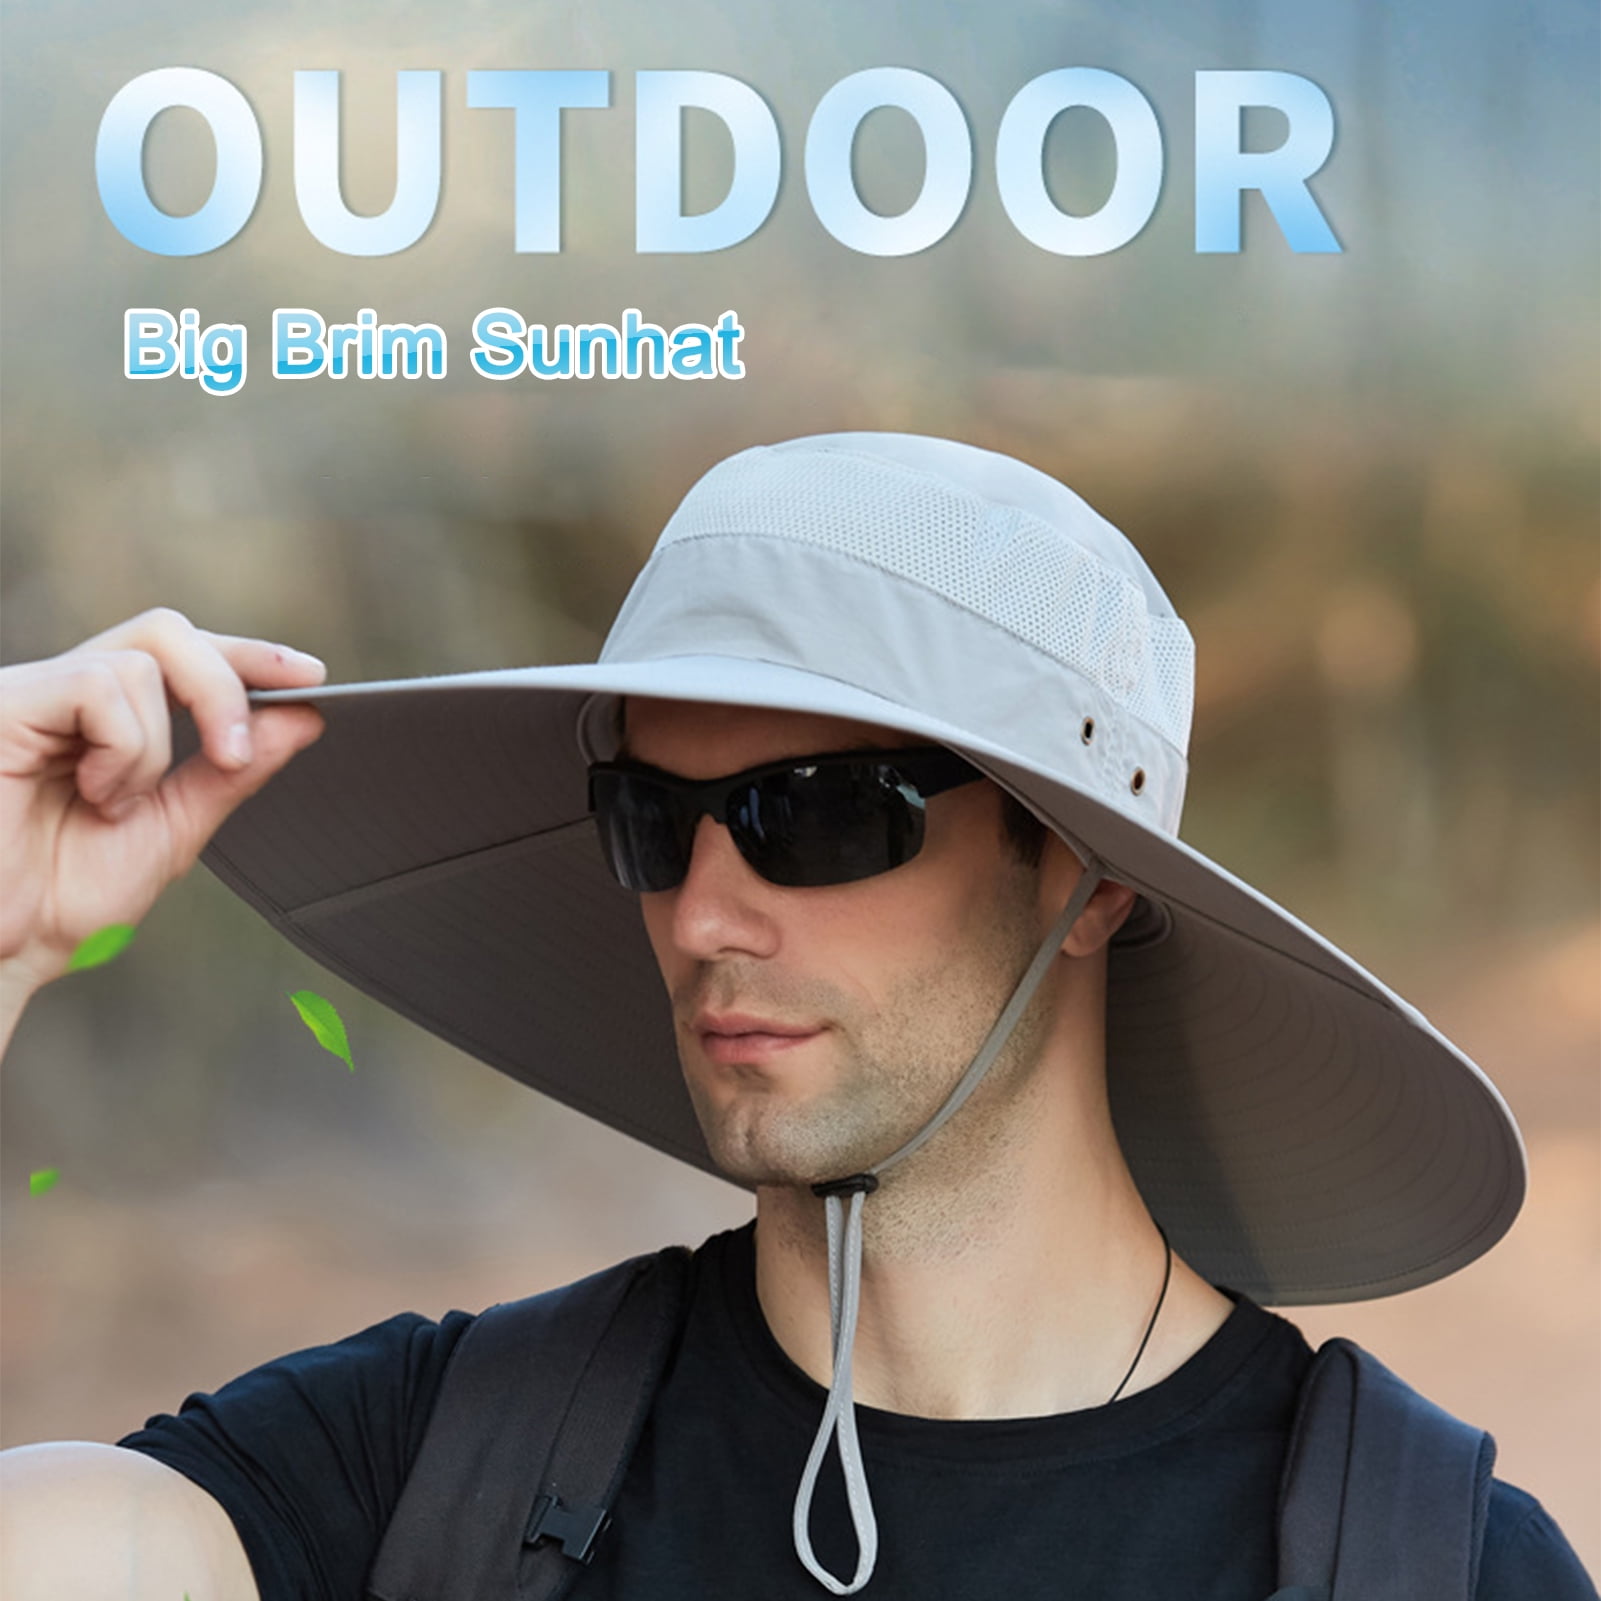 BetterZ Outdoor Men Big Brim Sunhat Waterproof Fisherman Hat for